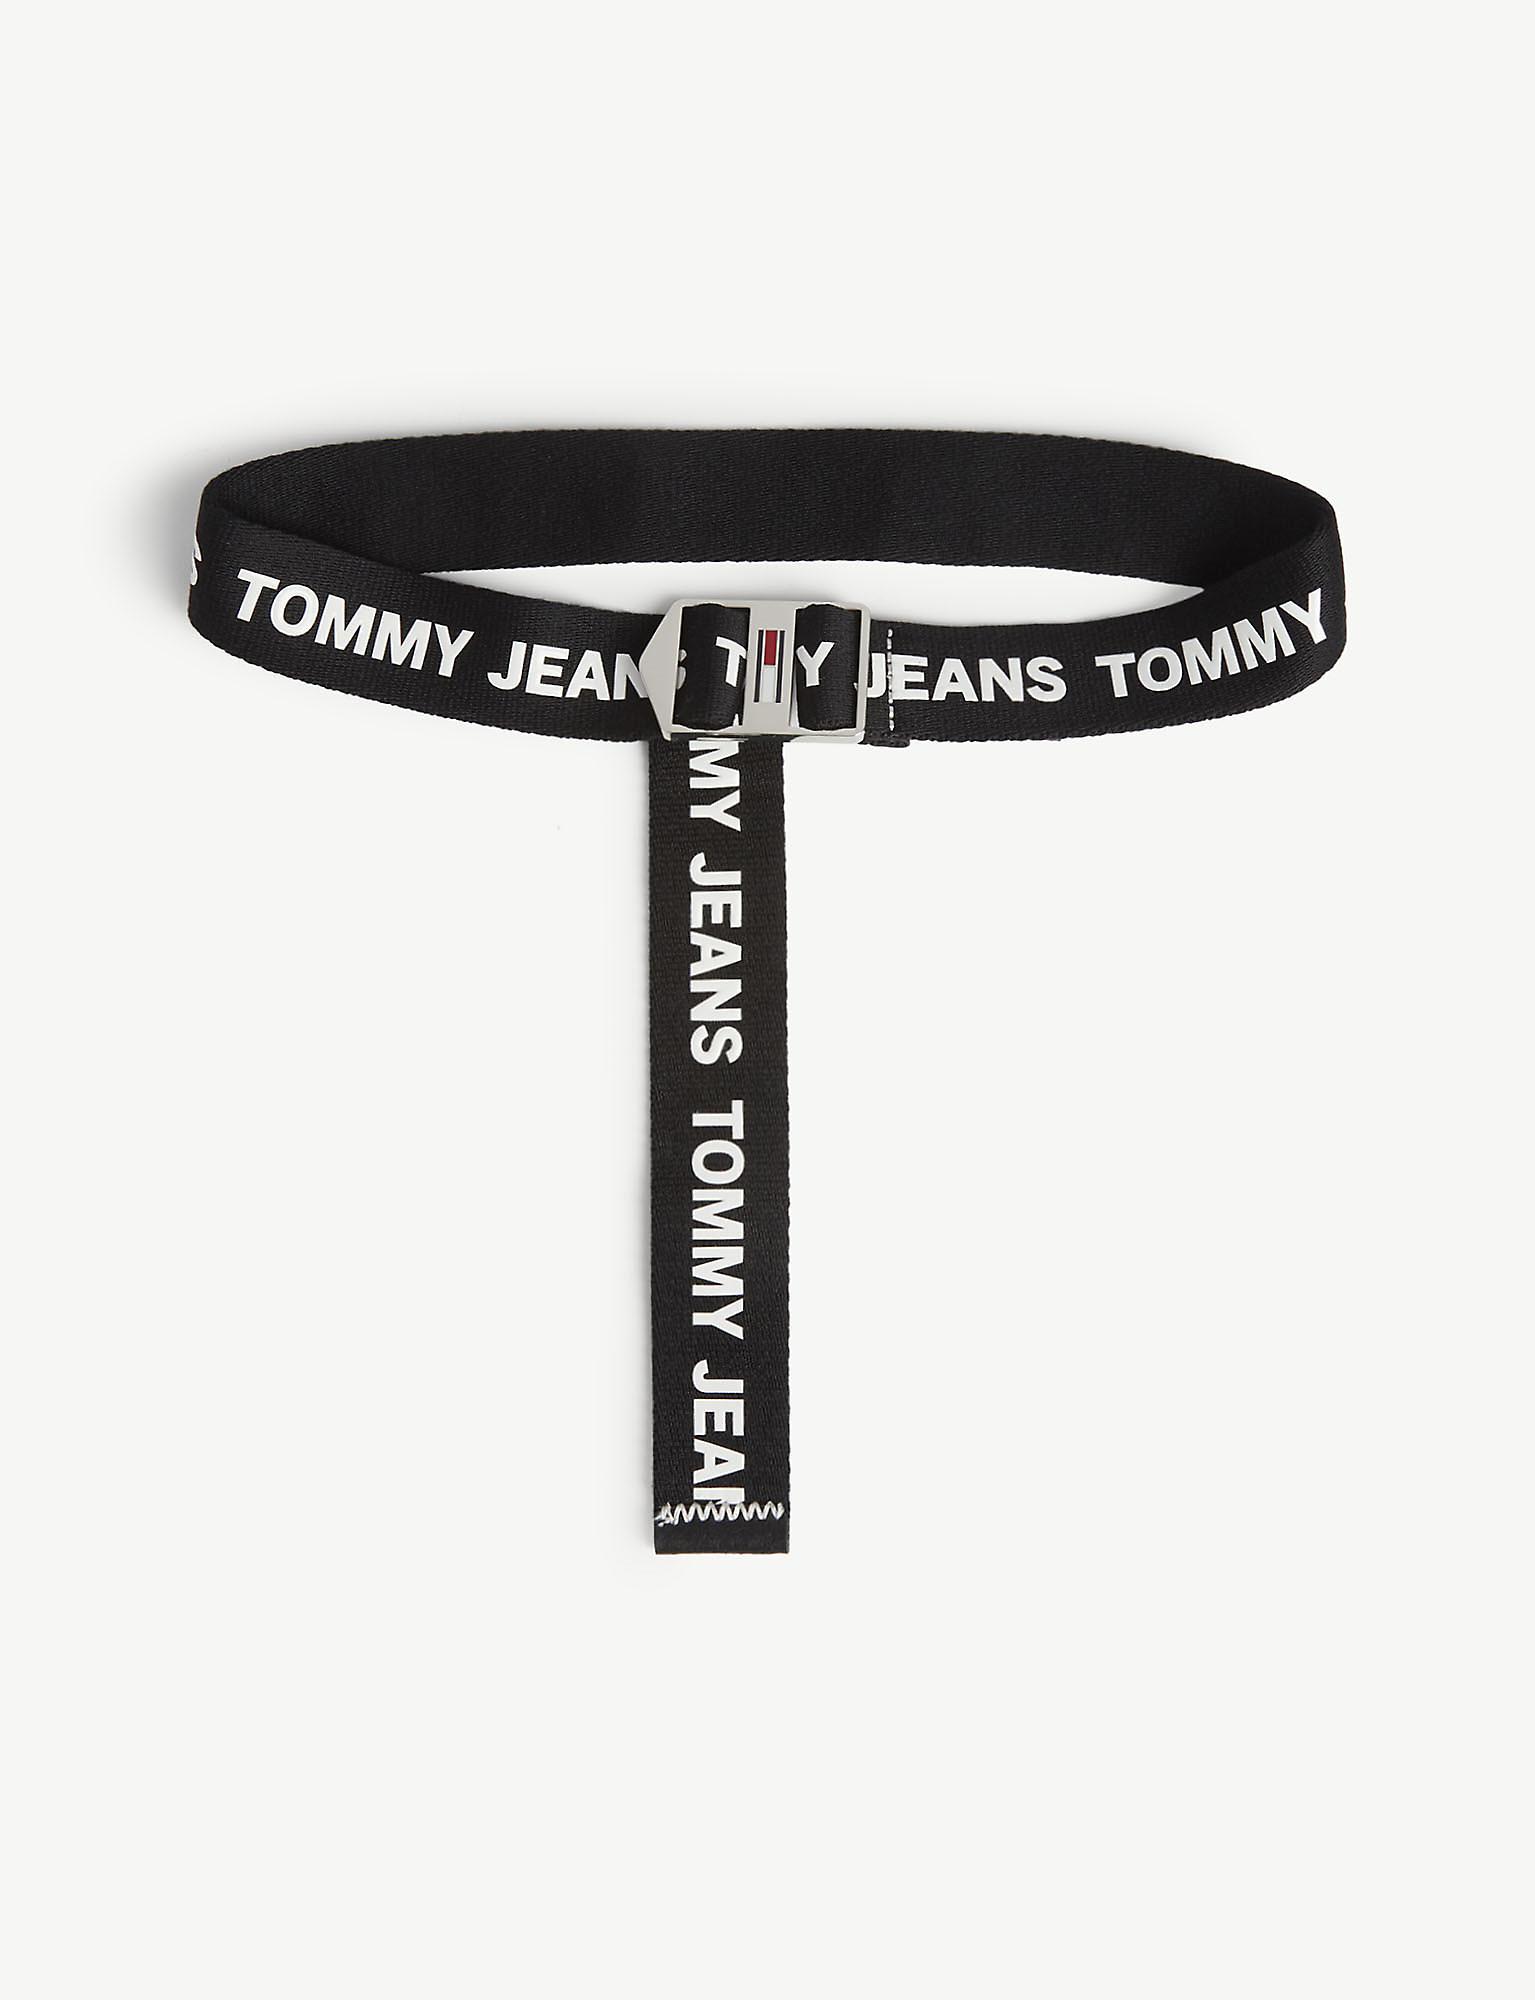 Tommy Hilfiger Denim Logo Tape Roller Buckle Belt in Black - Lyst